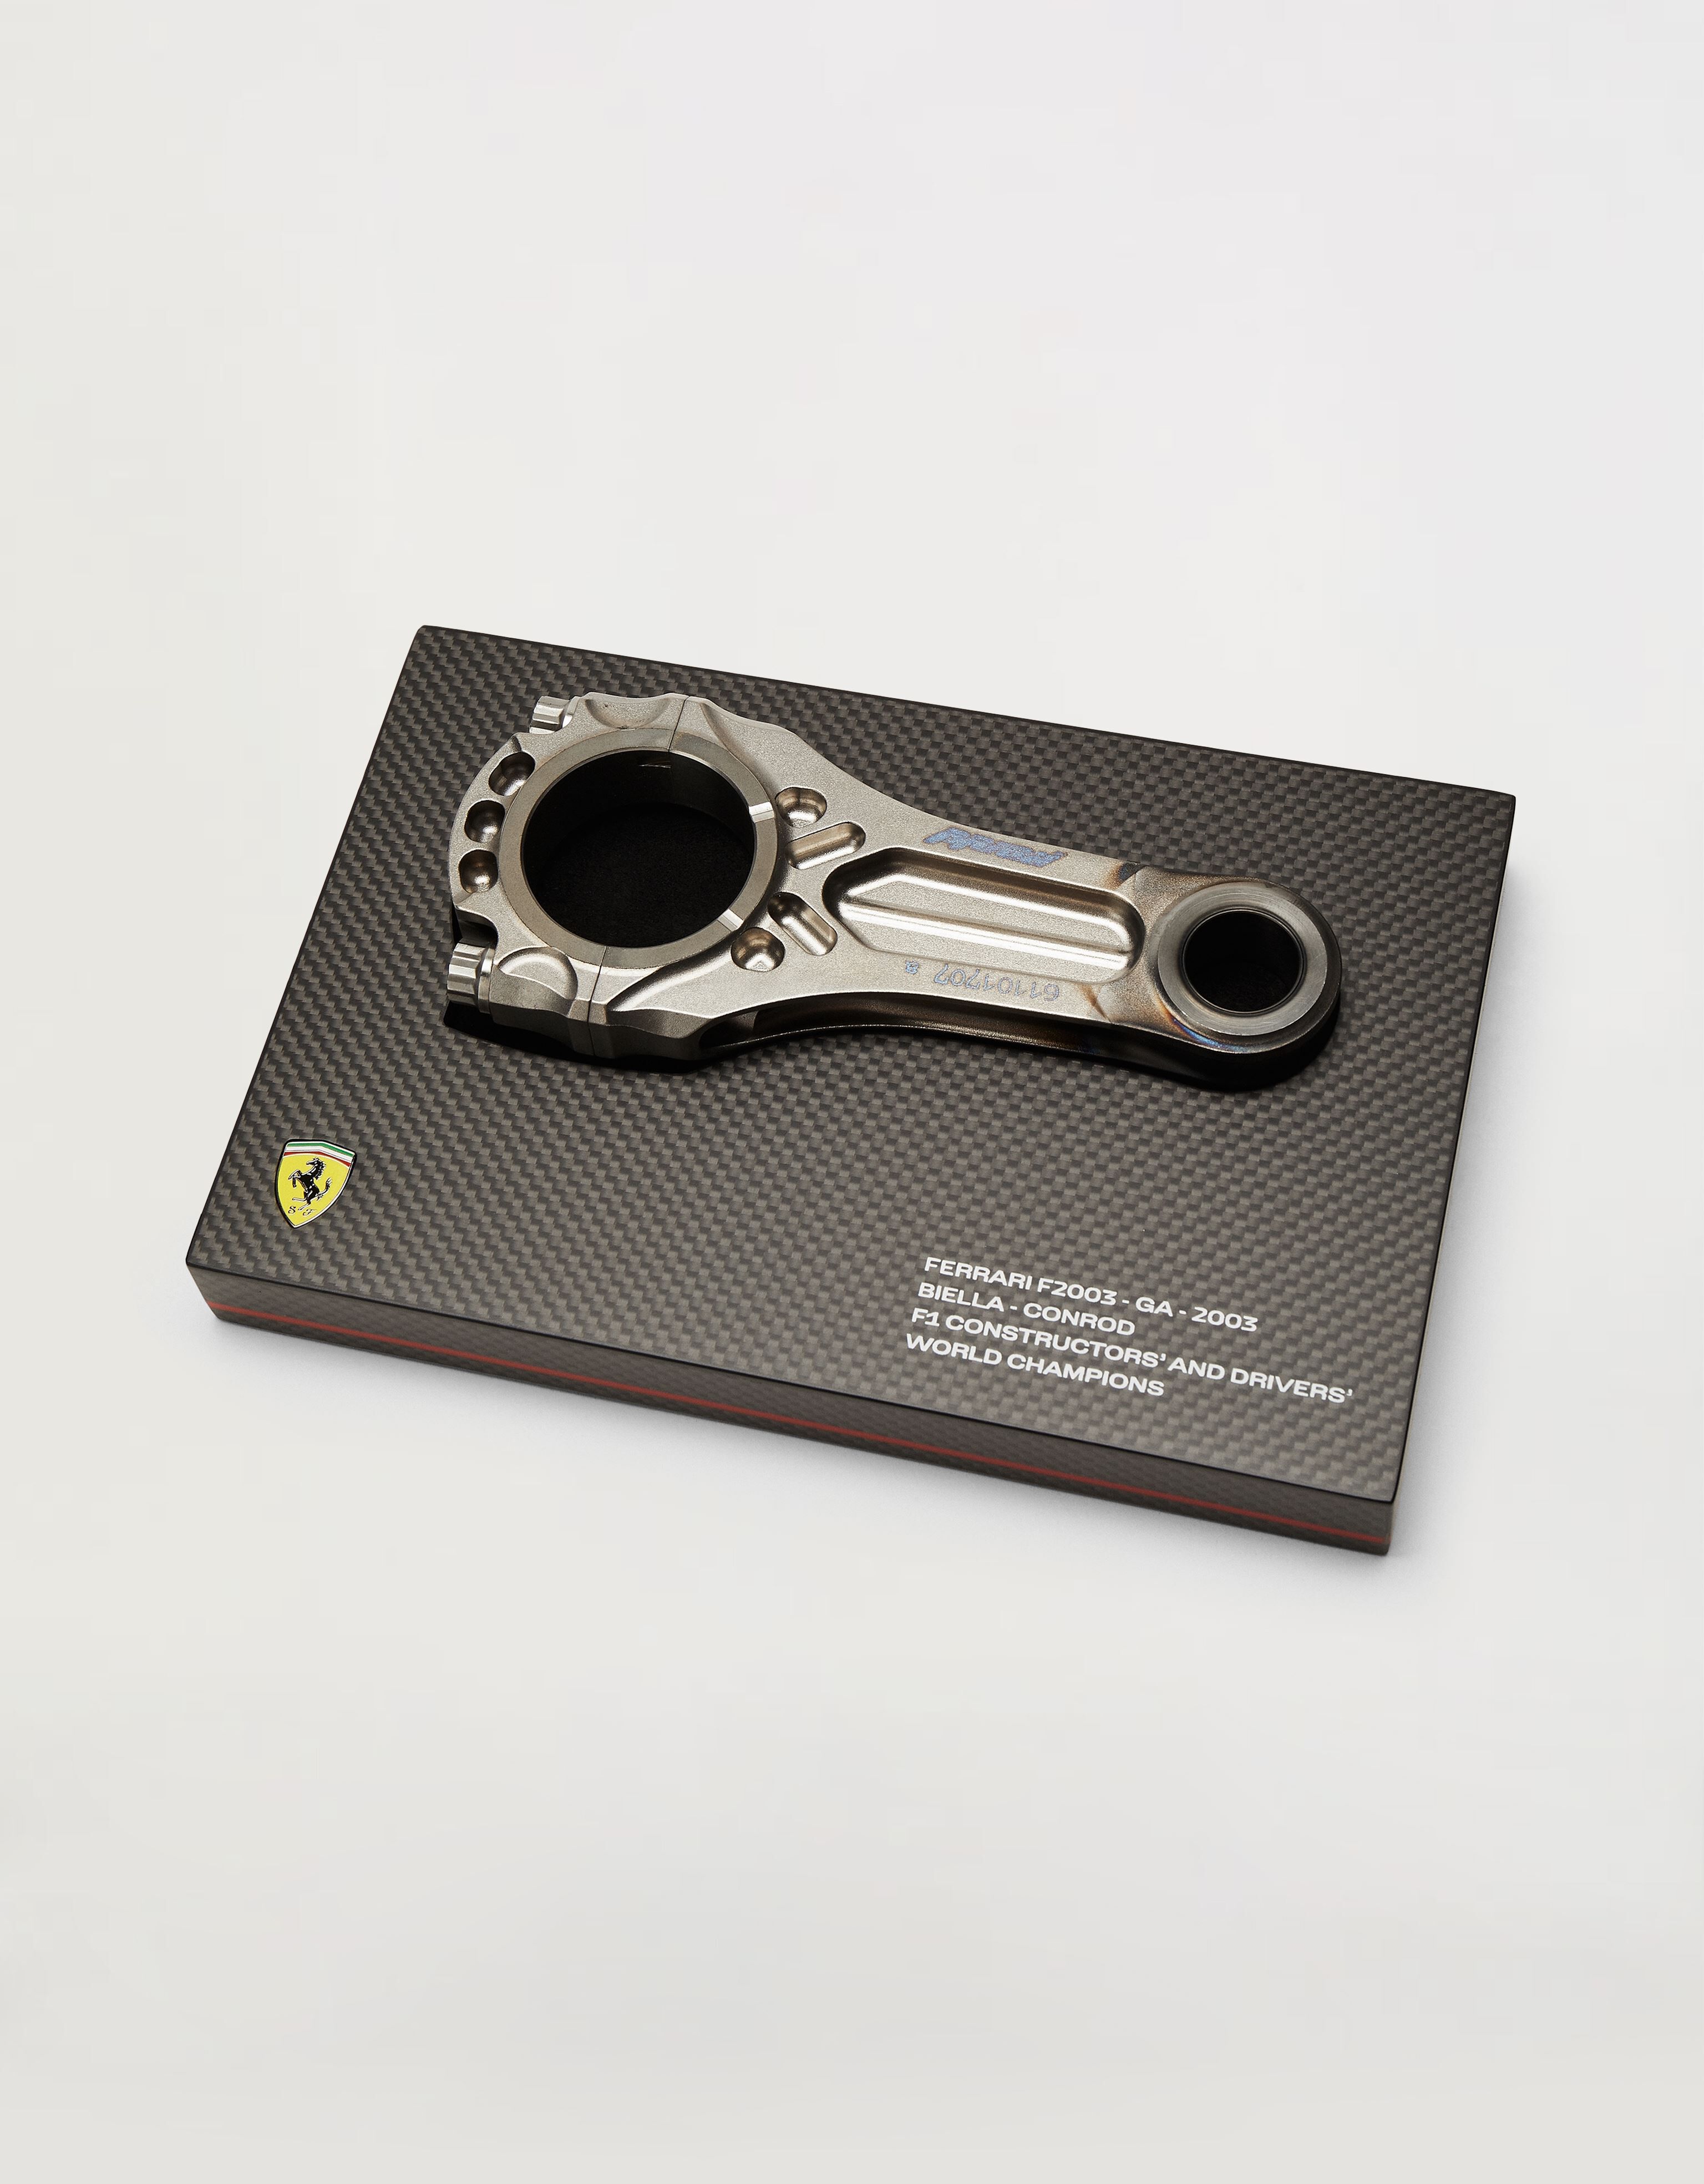 Ferrari Original piston from the F2003, winner of the 2003 Constructors' and Drivers' Championships MULTICOLOUR F1067f